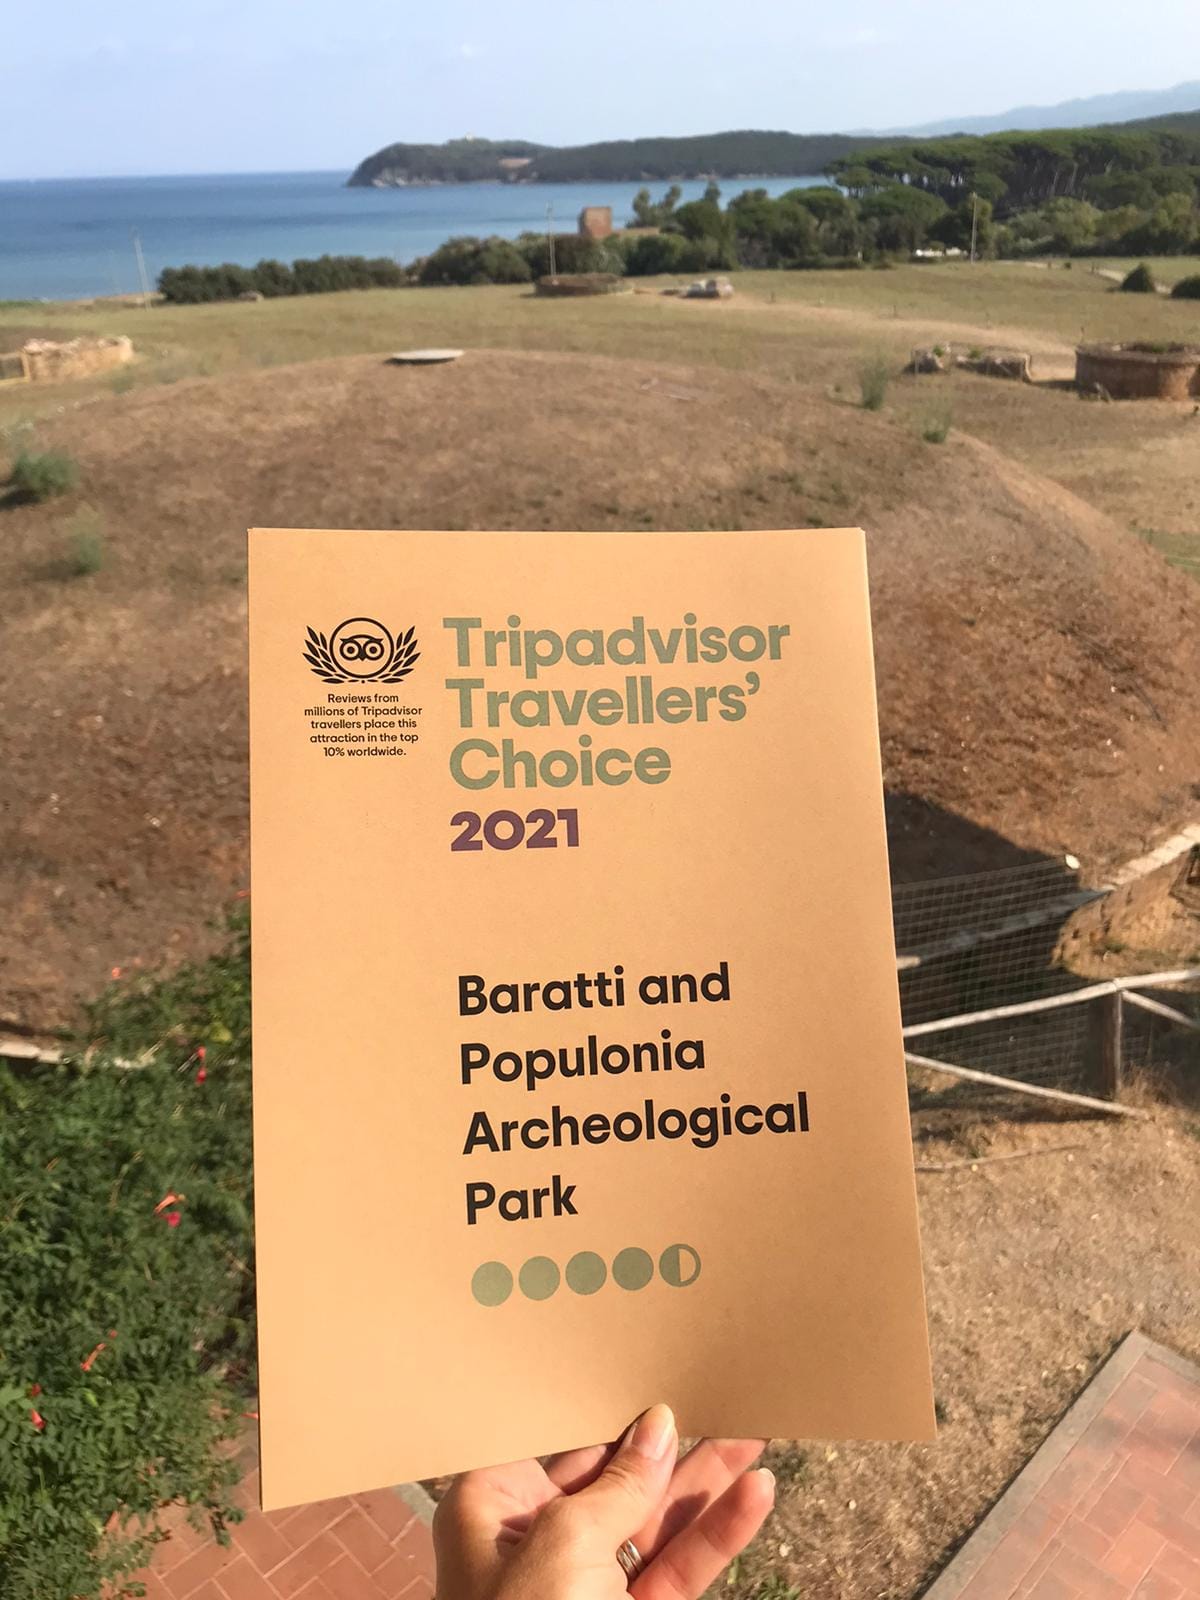 Il Parco archeologico di Baratti e Populonia premiato da Tripadvisor